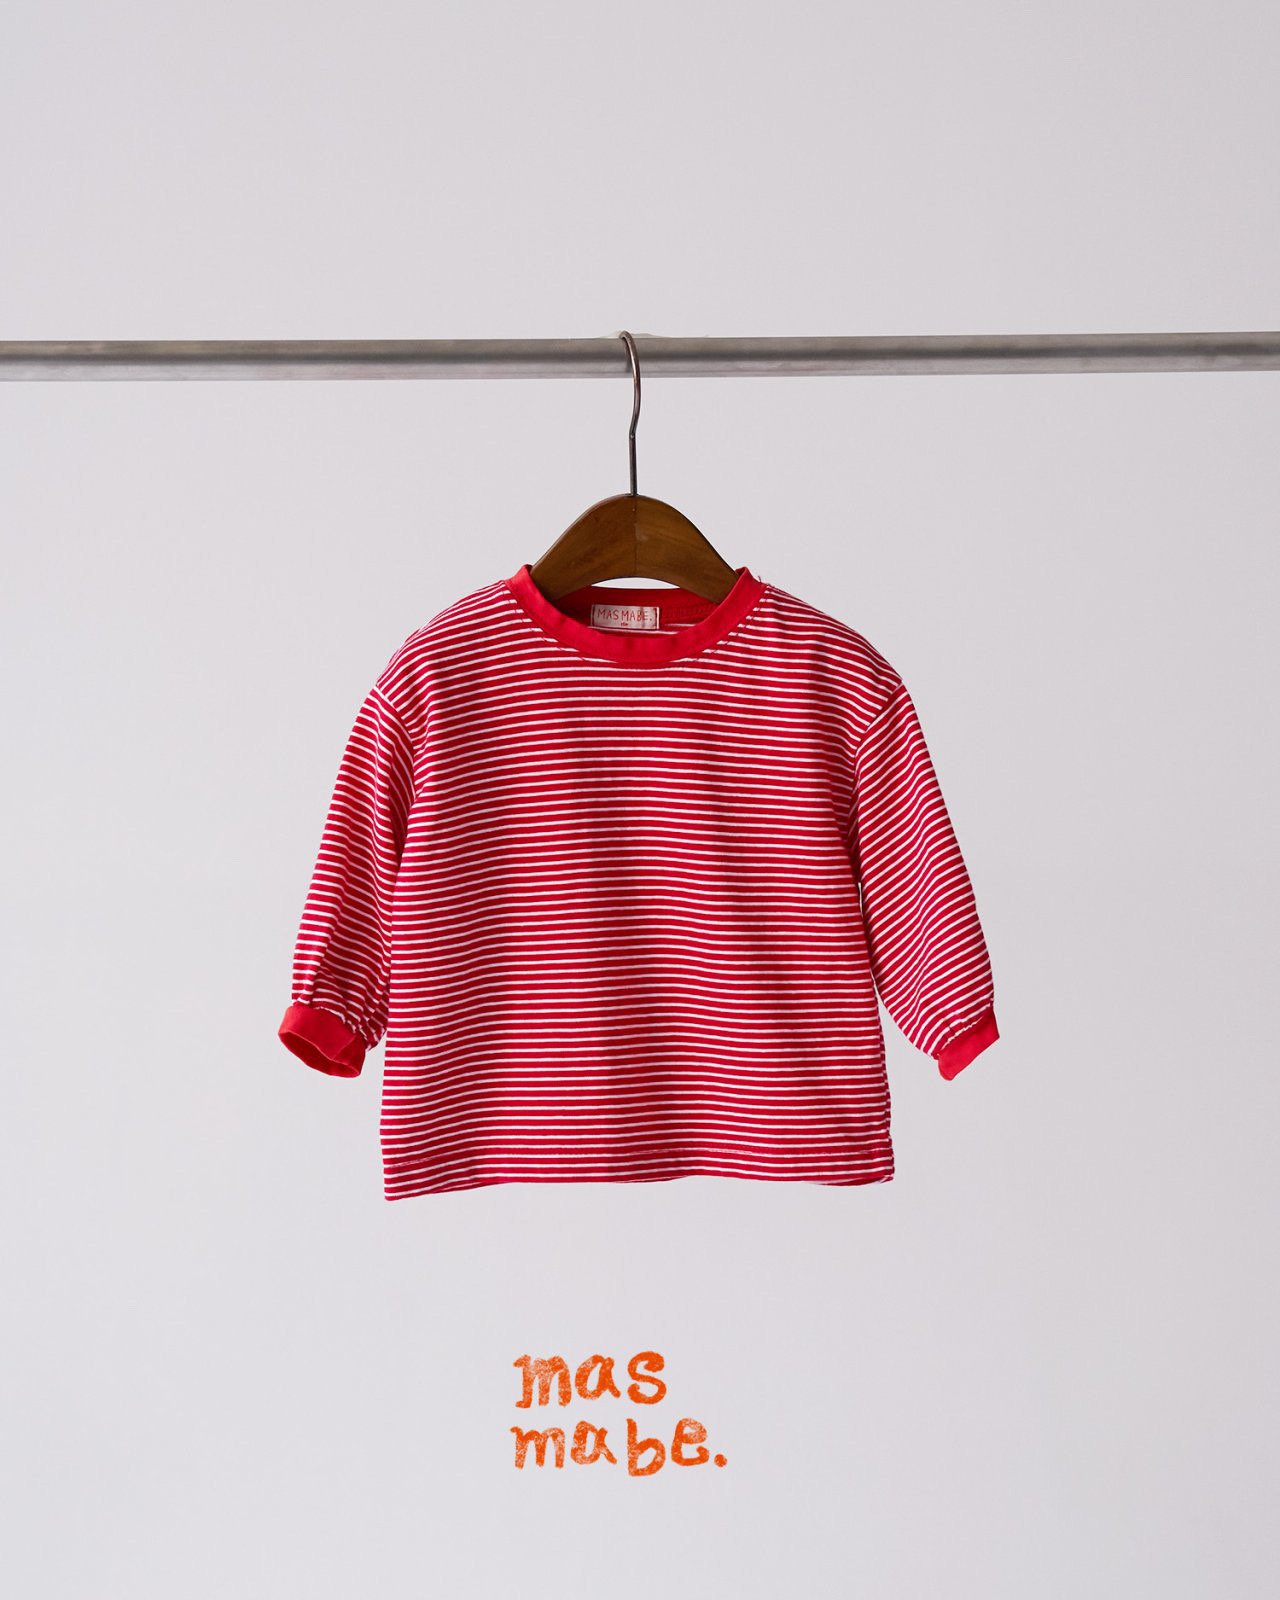 Masmabe - Korean Baby Fashion - #babyboutiqueclothing - Most Tee